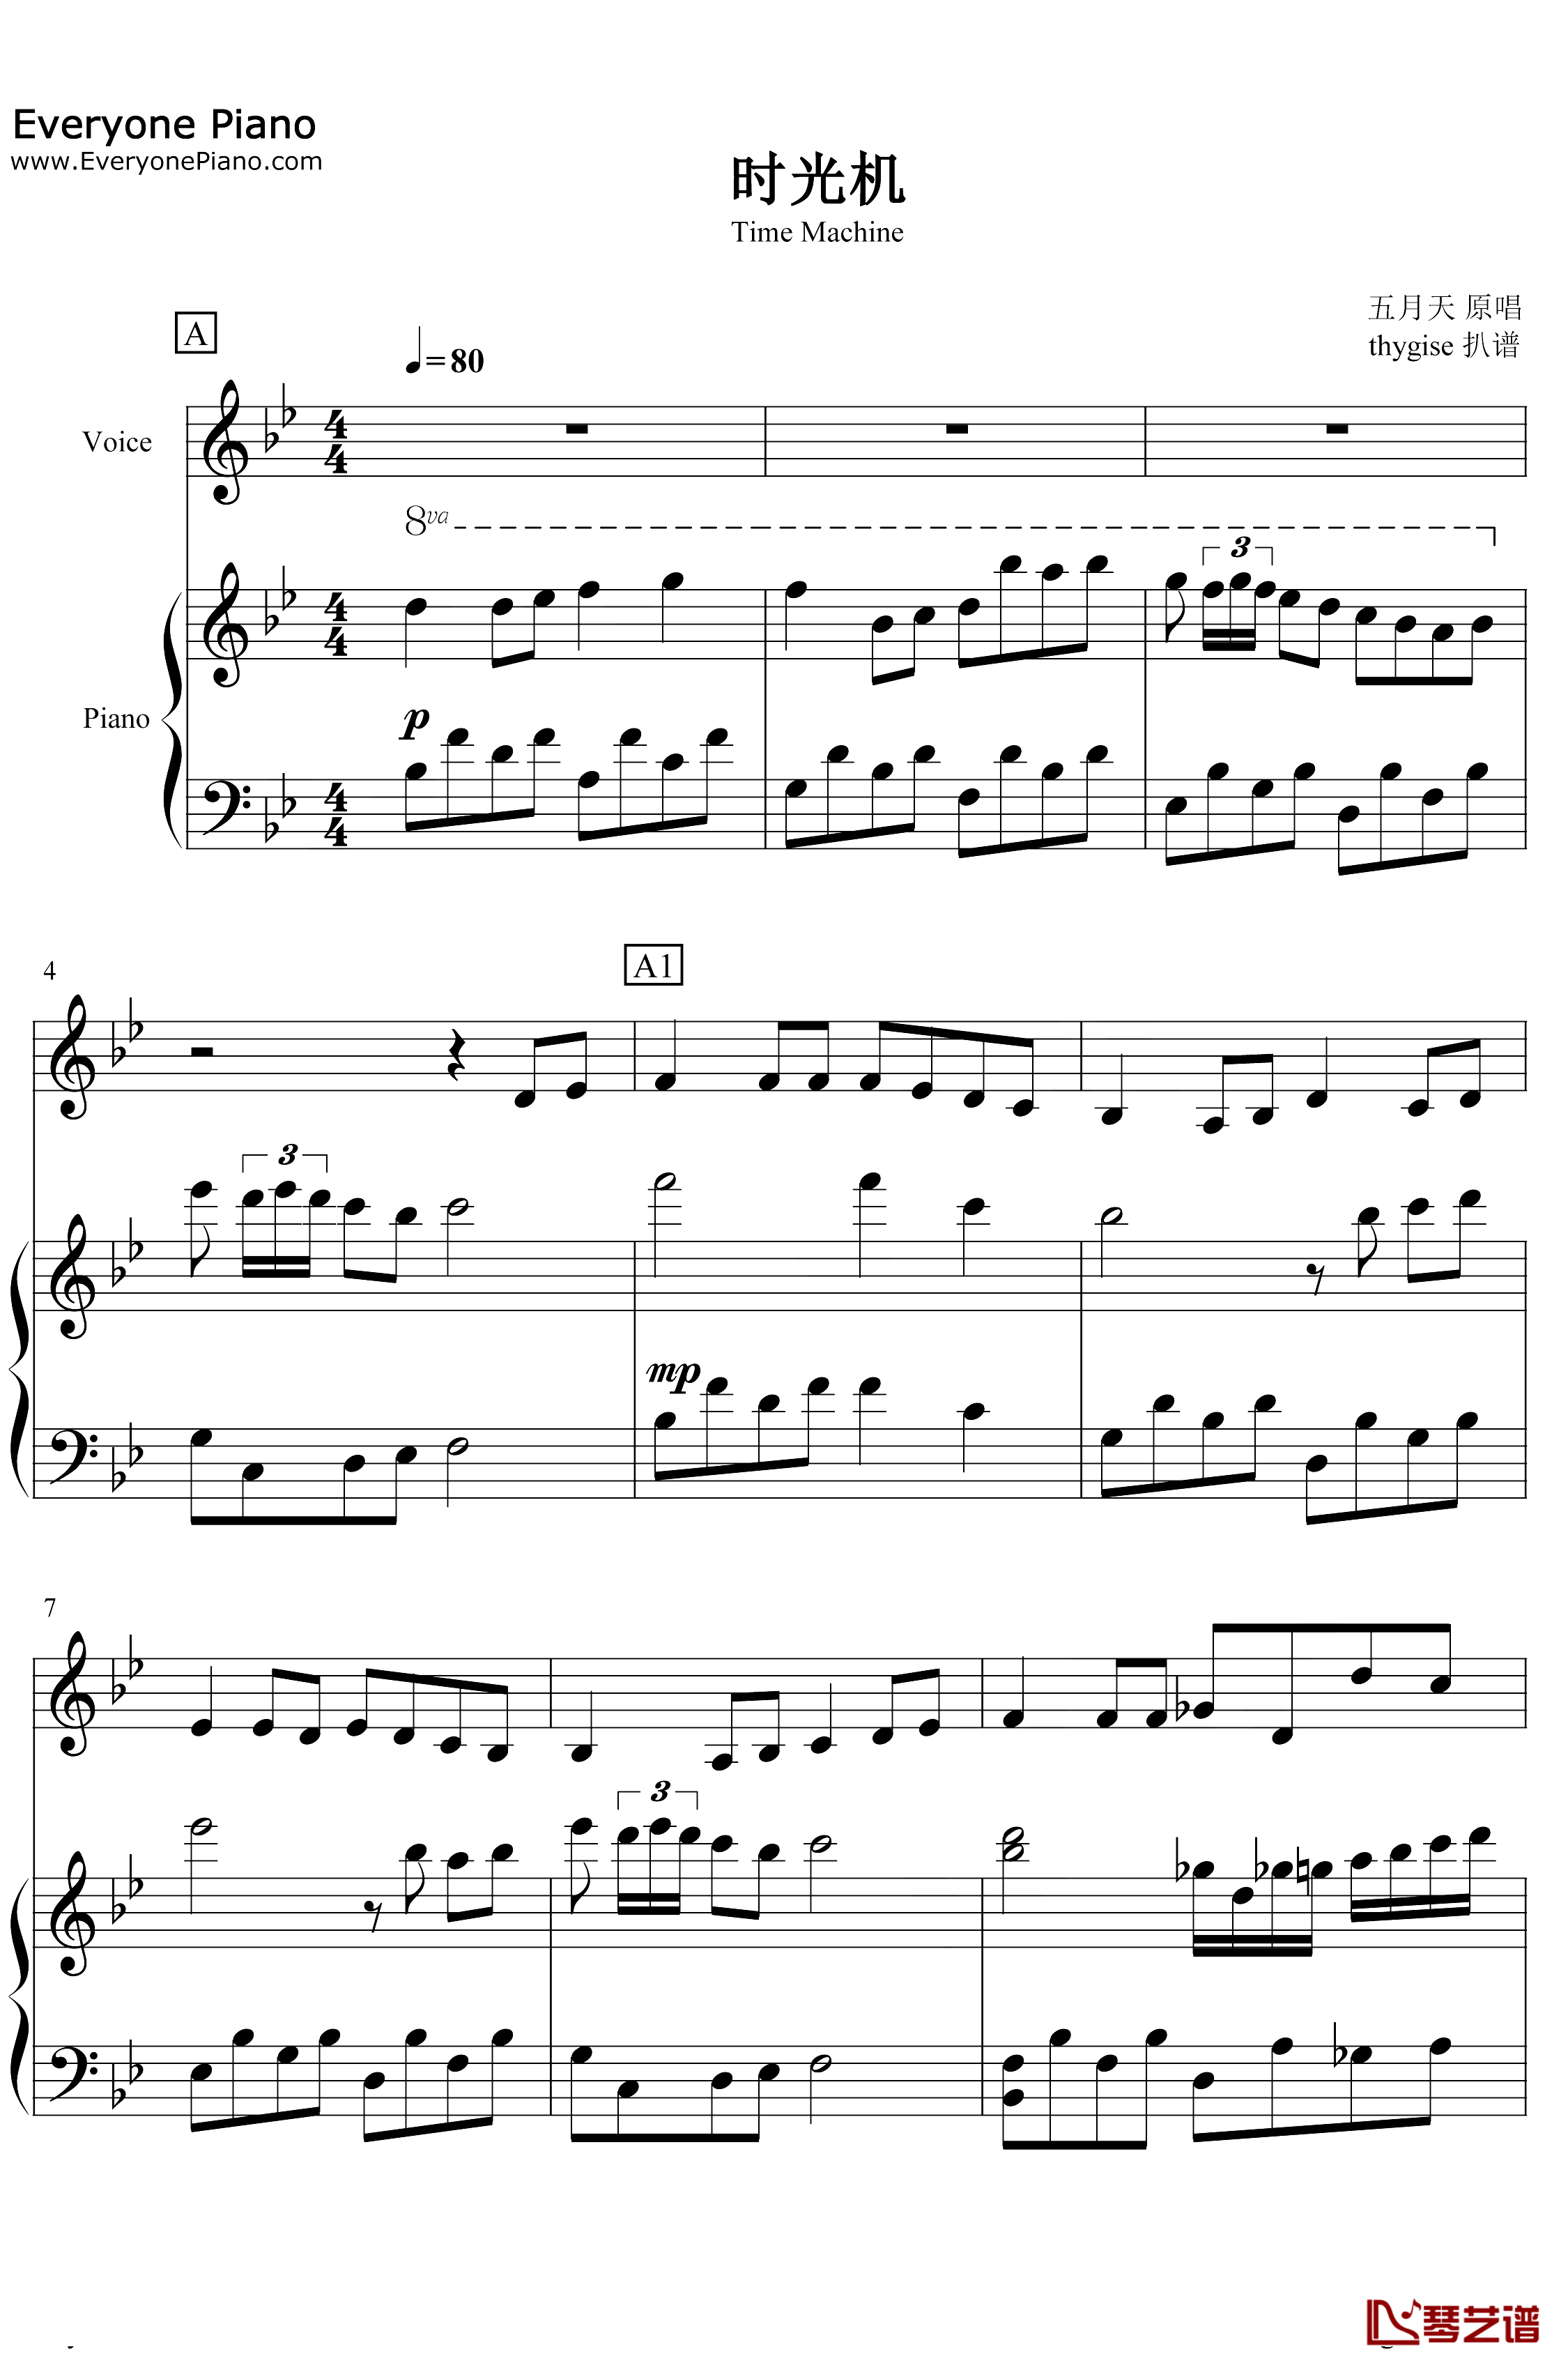 时光机钢琴谱-五月天-纯钢琴弹唱版1